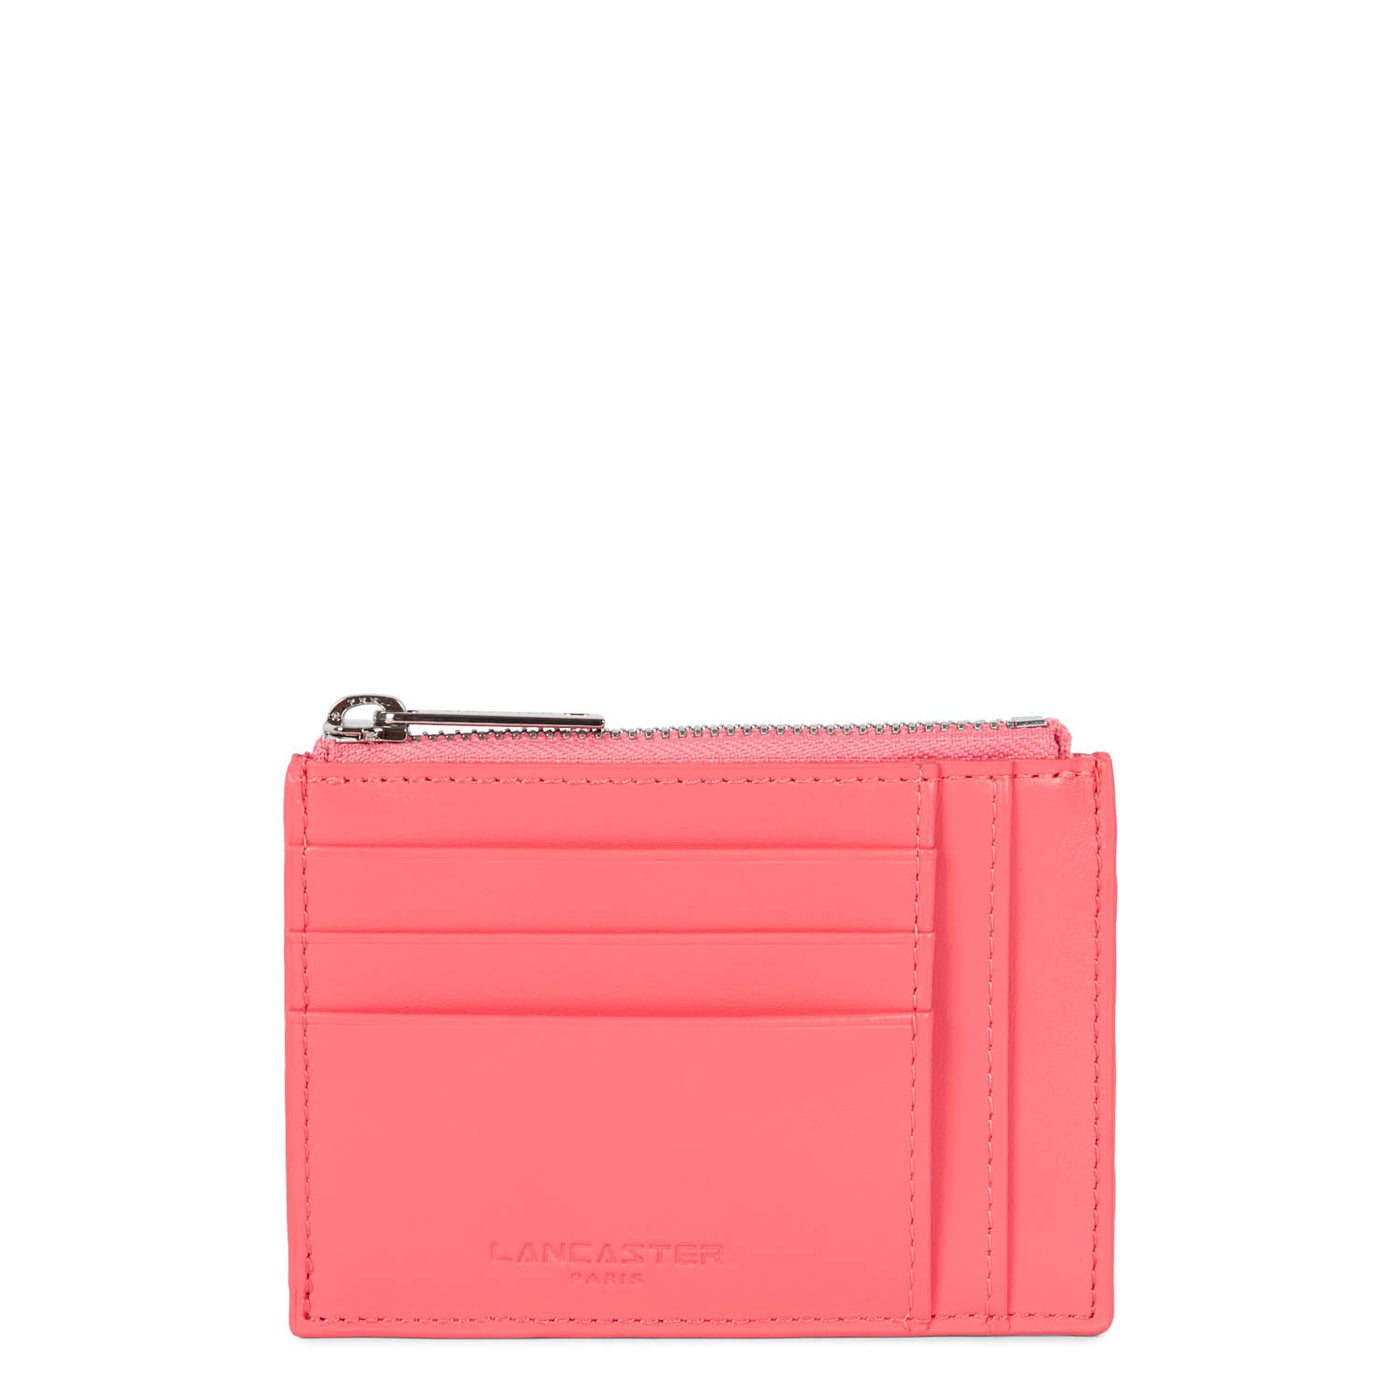 card holder - paris pm #couleur_rose-bonbon